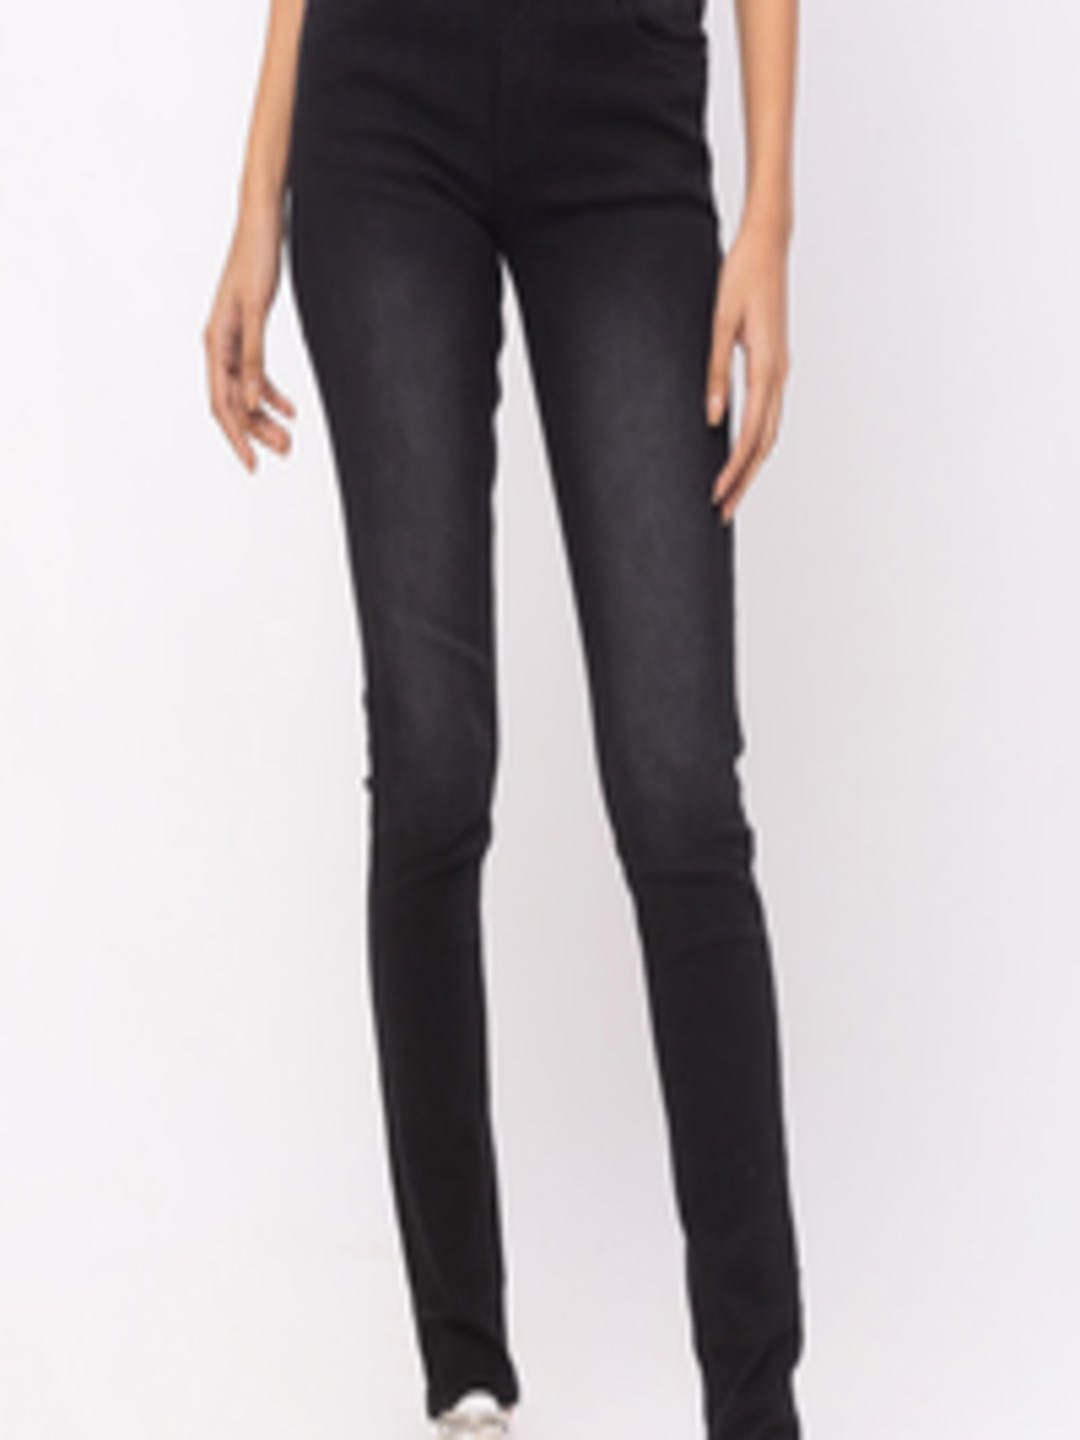 Buy ZOLA Women Black Skinny Fit Lightweight Jeans - Jeans for Women ...